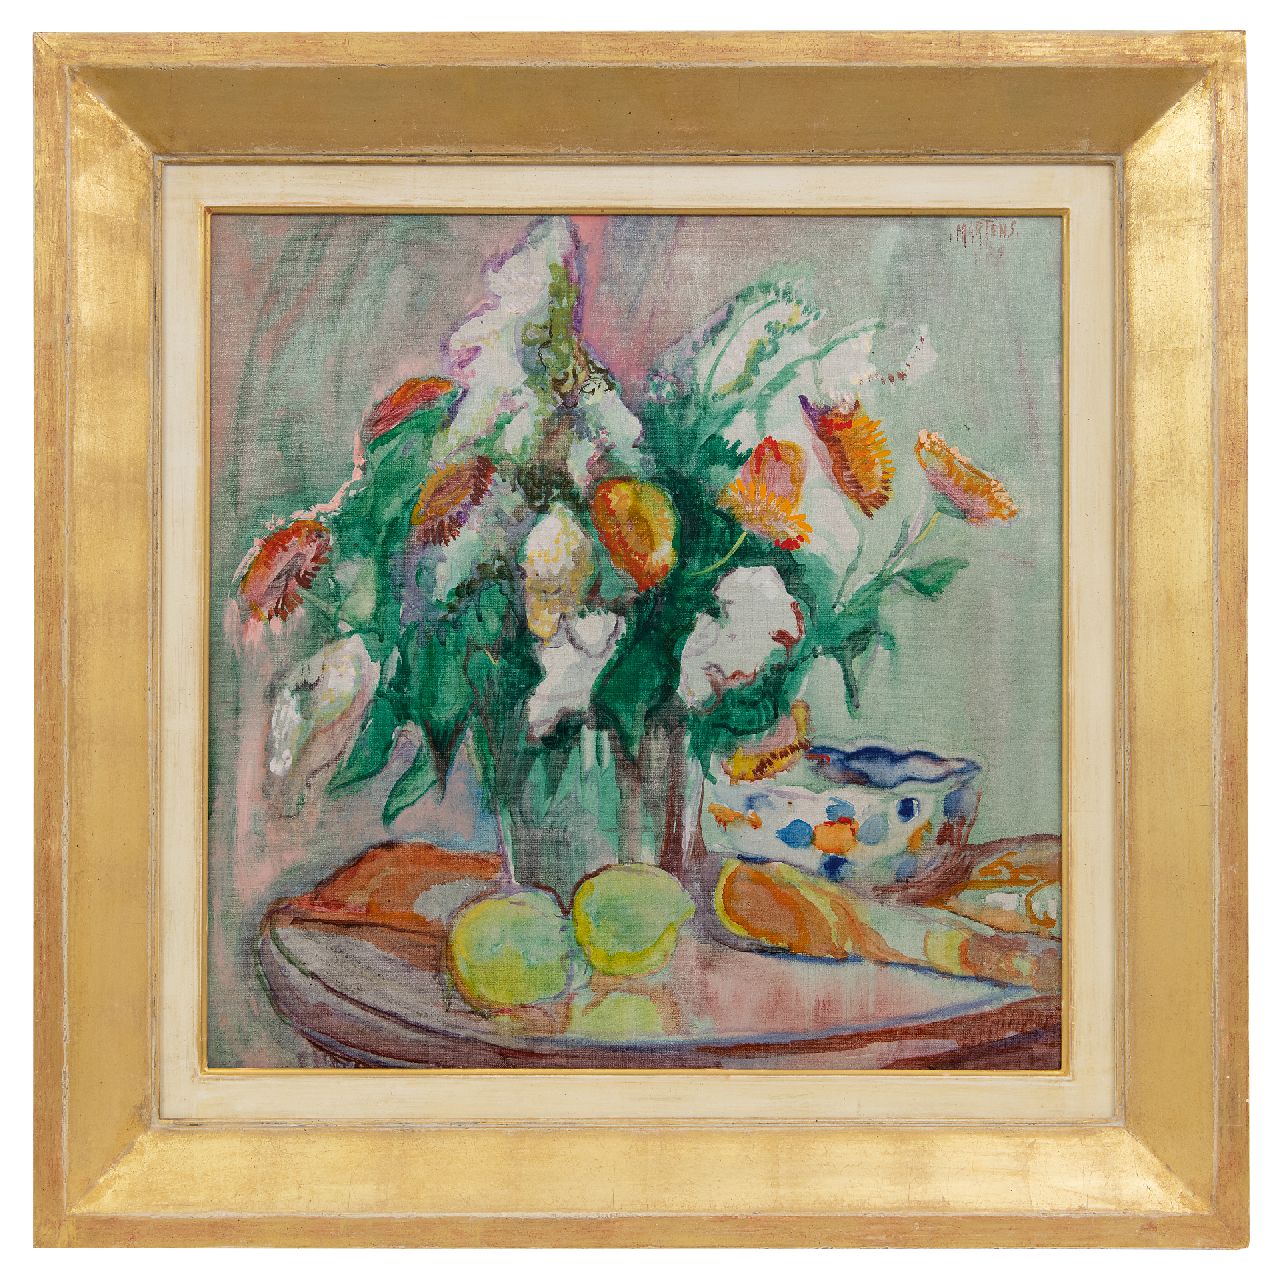 Martens G.G.  | Gijsbert 'George' Martens | Schilderijen te koop aangeboden | Bloemstilleven met citroenen, benzinerel en wasverf op doek 50,3 x 50,3 cm, gesigneerd rechtsboven